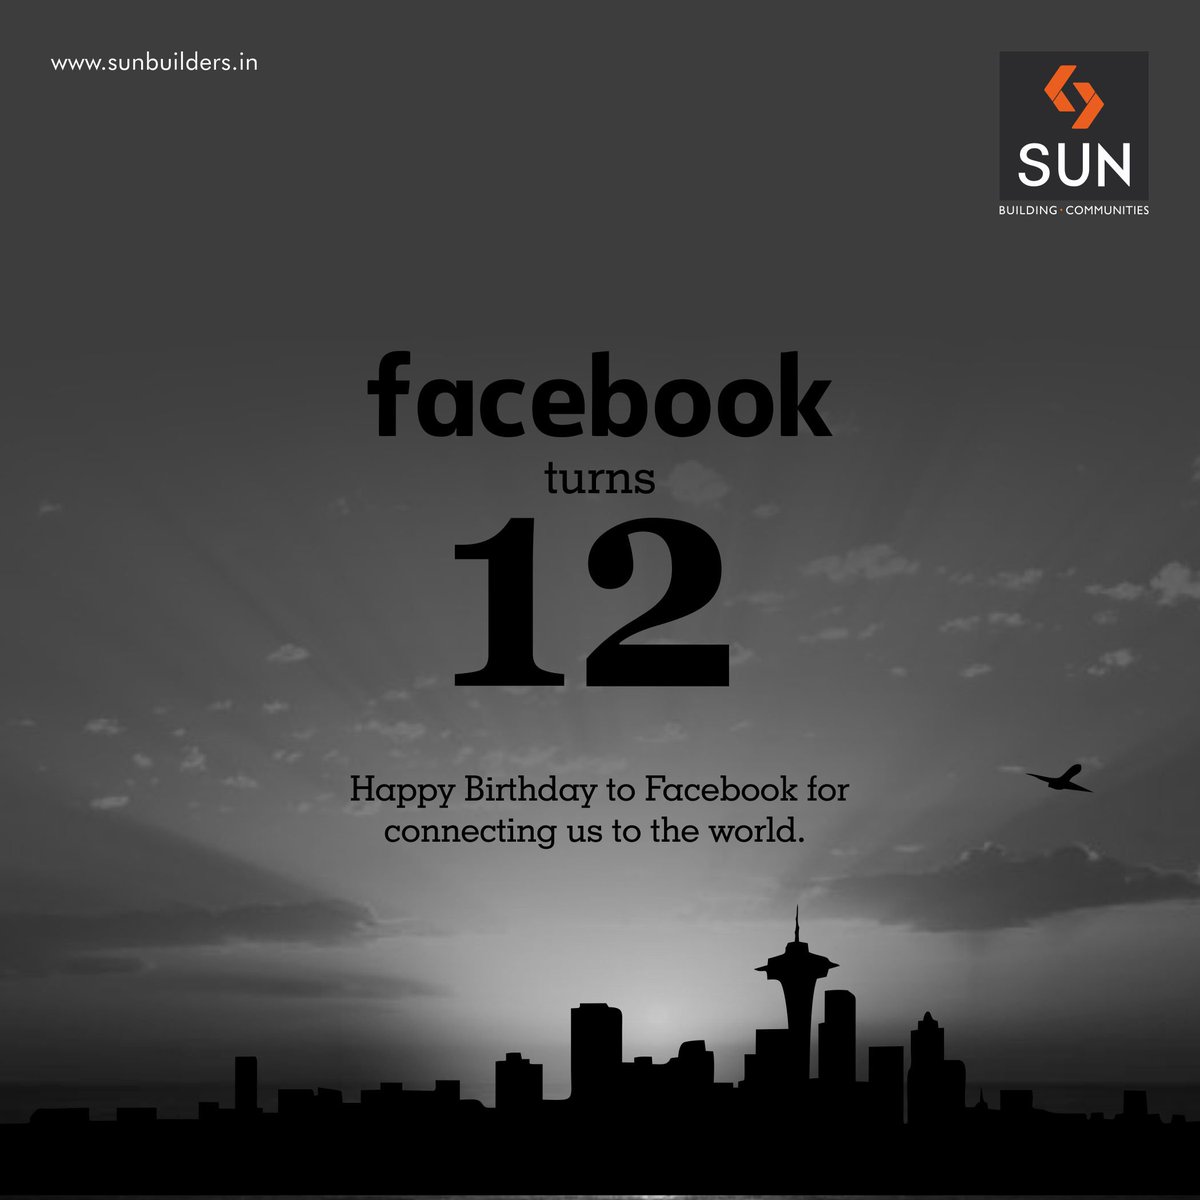 We wish #Facebook a Happy 12th Birthday!
#friendsday https://t.co/0ydIzRi1Ab